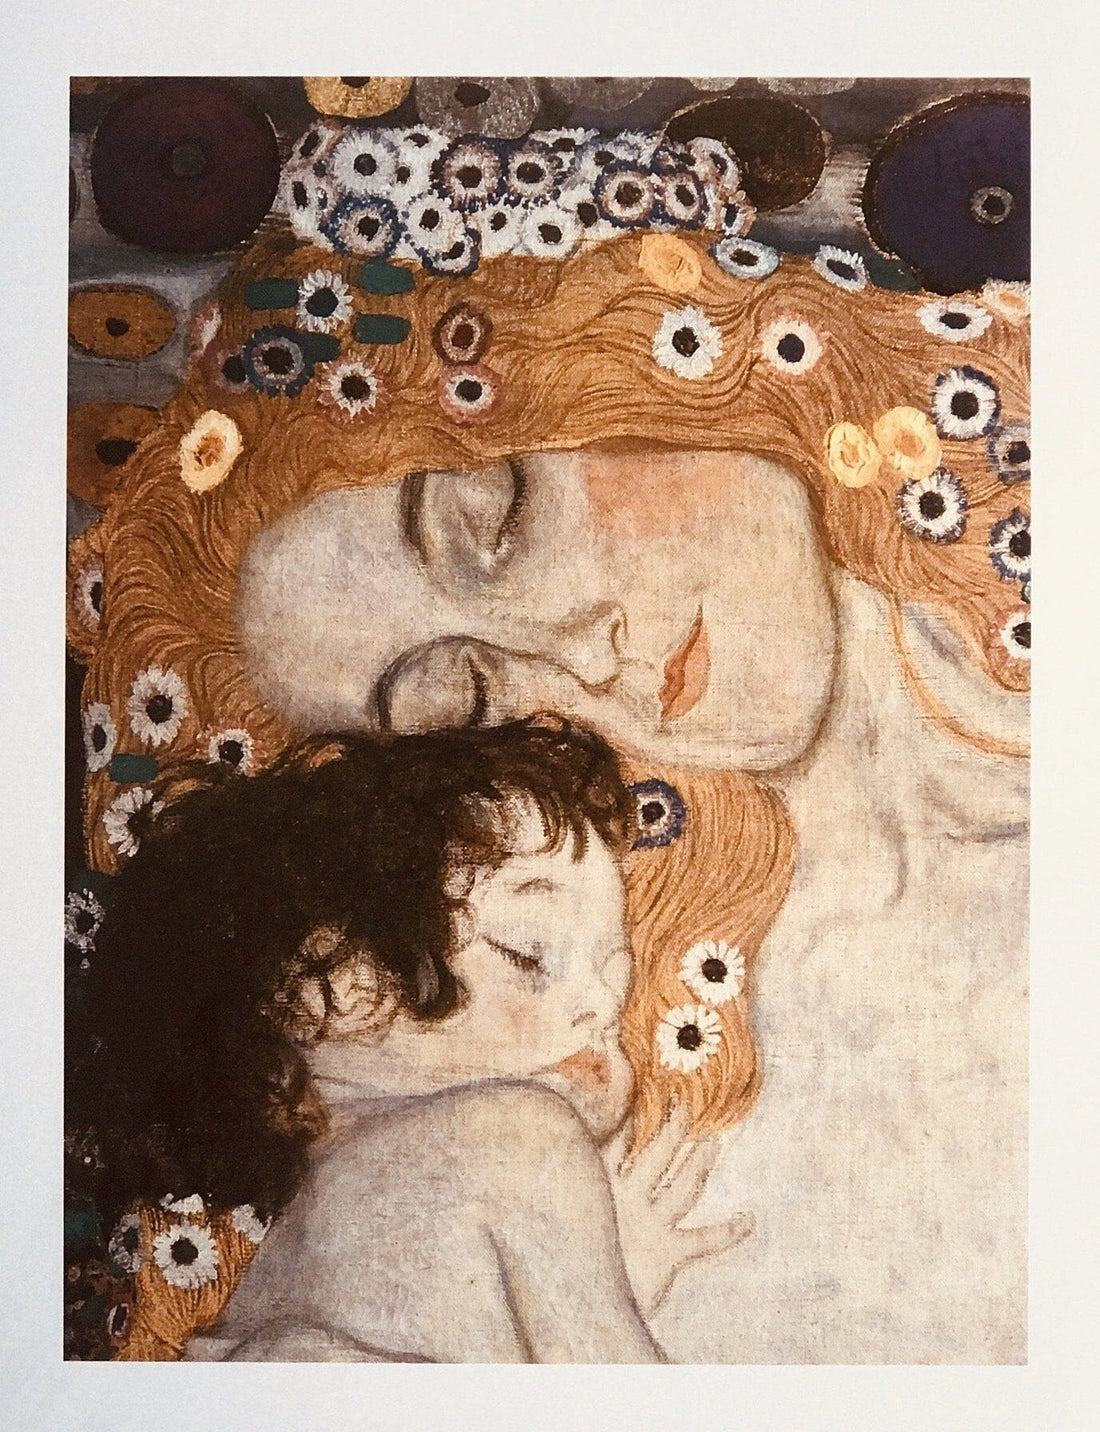 Gustav Klimt: A Journey Through His Most Famous Prints